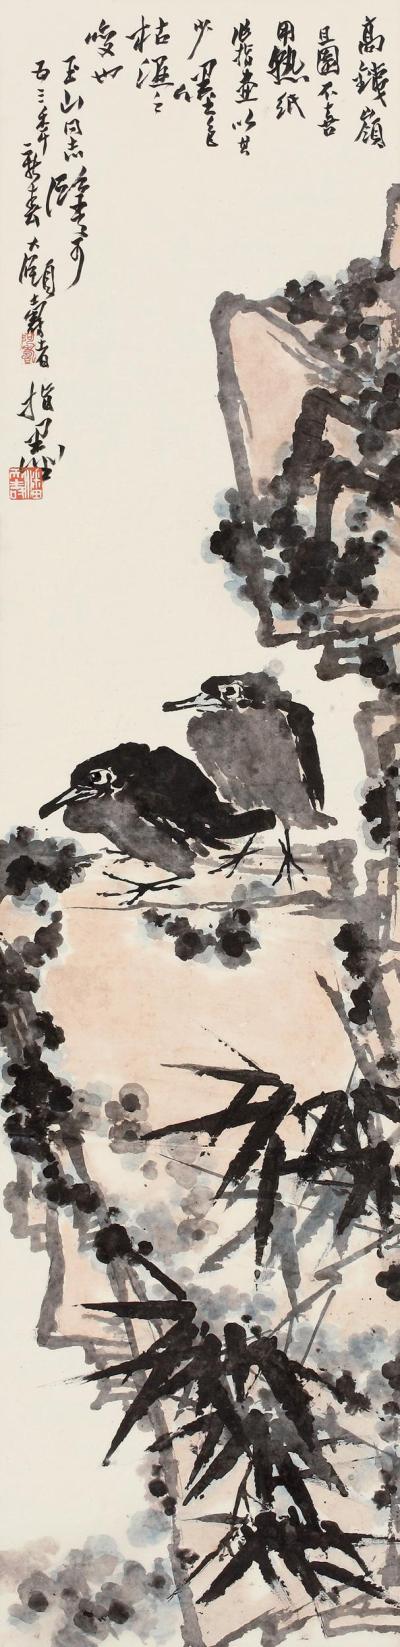 潘天寿 1953年作 竹石双禽图 立轴